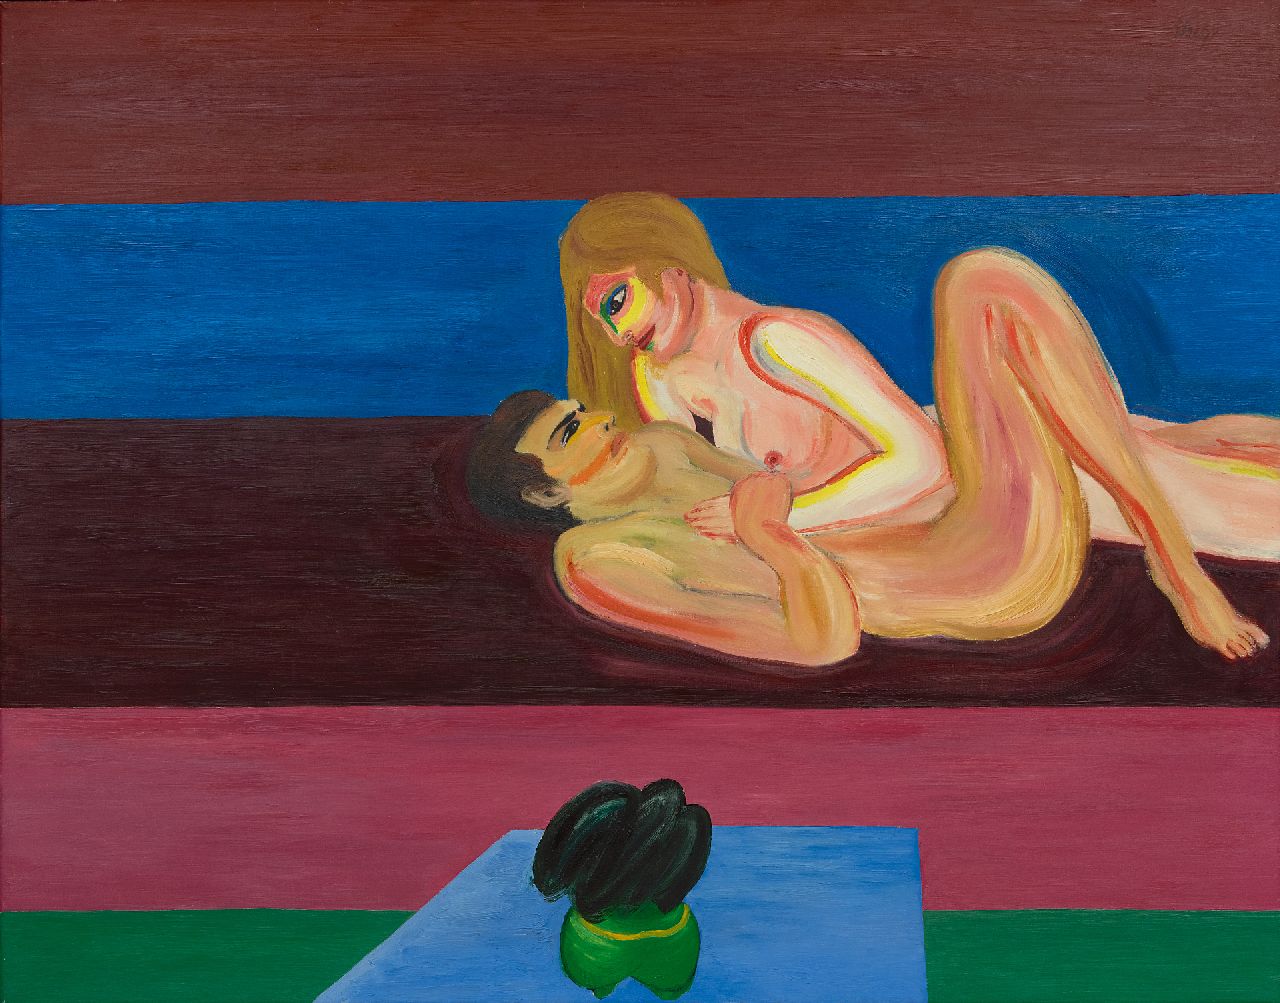 Yvan Theys | Liefdesscène in abstracte ruimte/Sich liebendes Paar in einem abstrakten Raum, Öl auf Leinwand, 118,0 x 146,1 cm, Unterzeichnet r.o. und datiert 1975 auf dem Keilrahmen